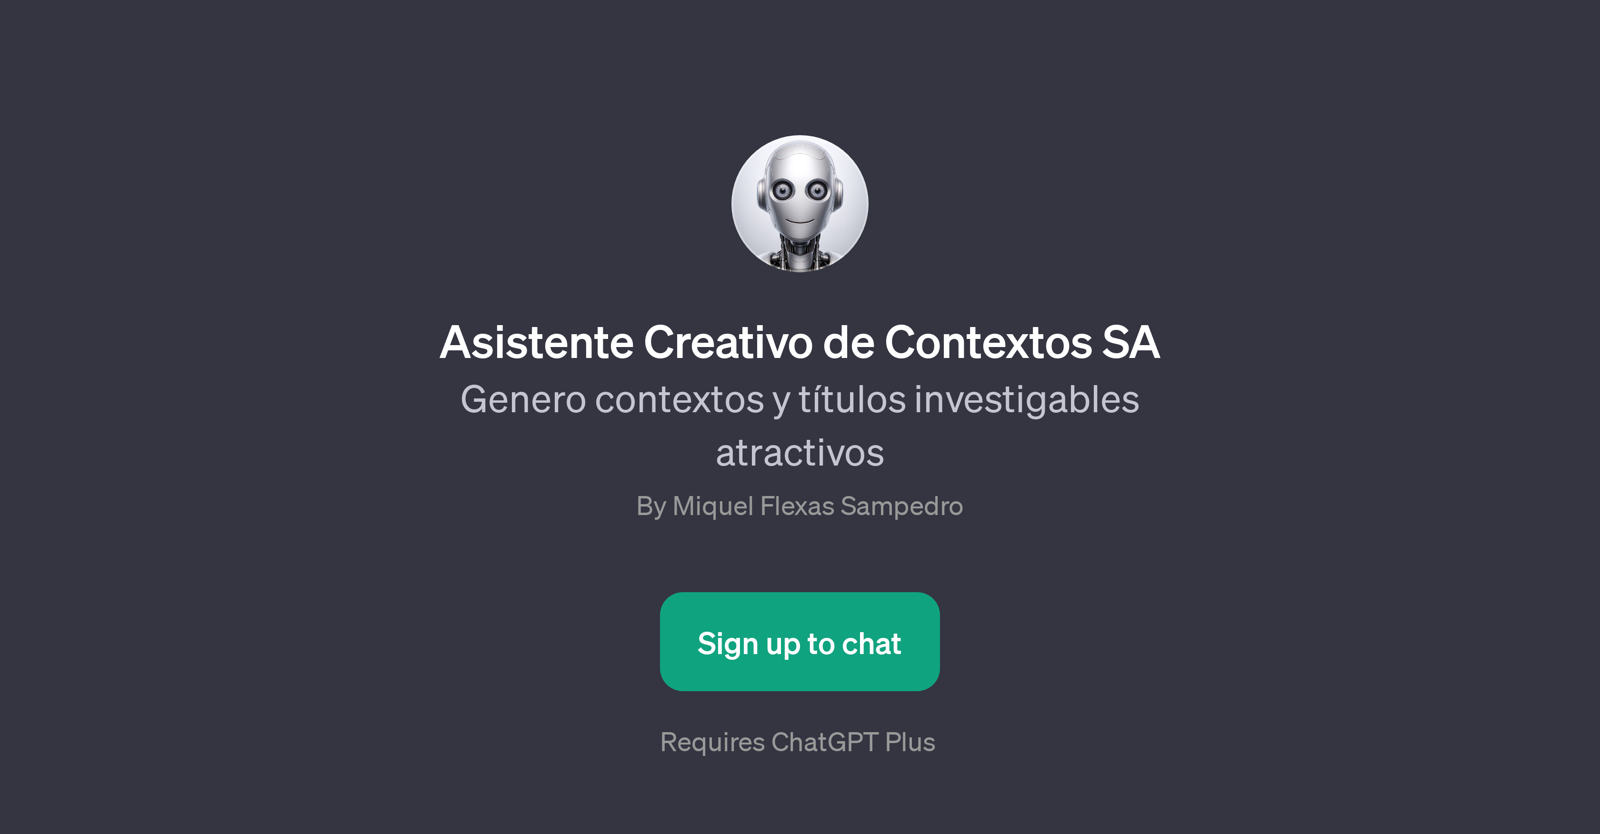 Asistente Creativo de Contextos SA website